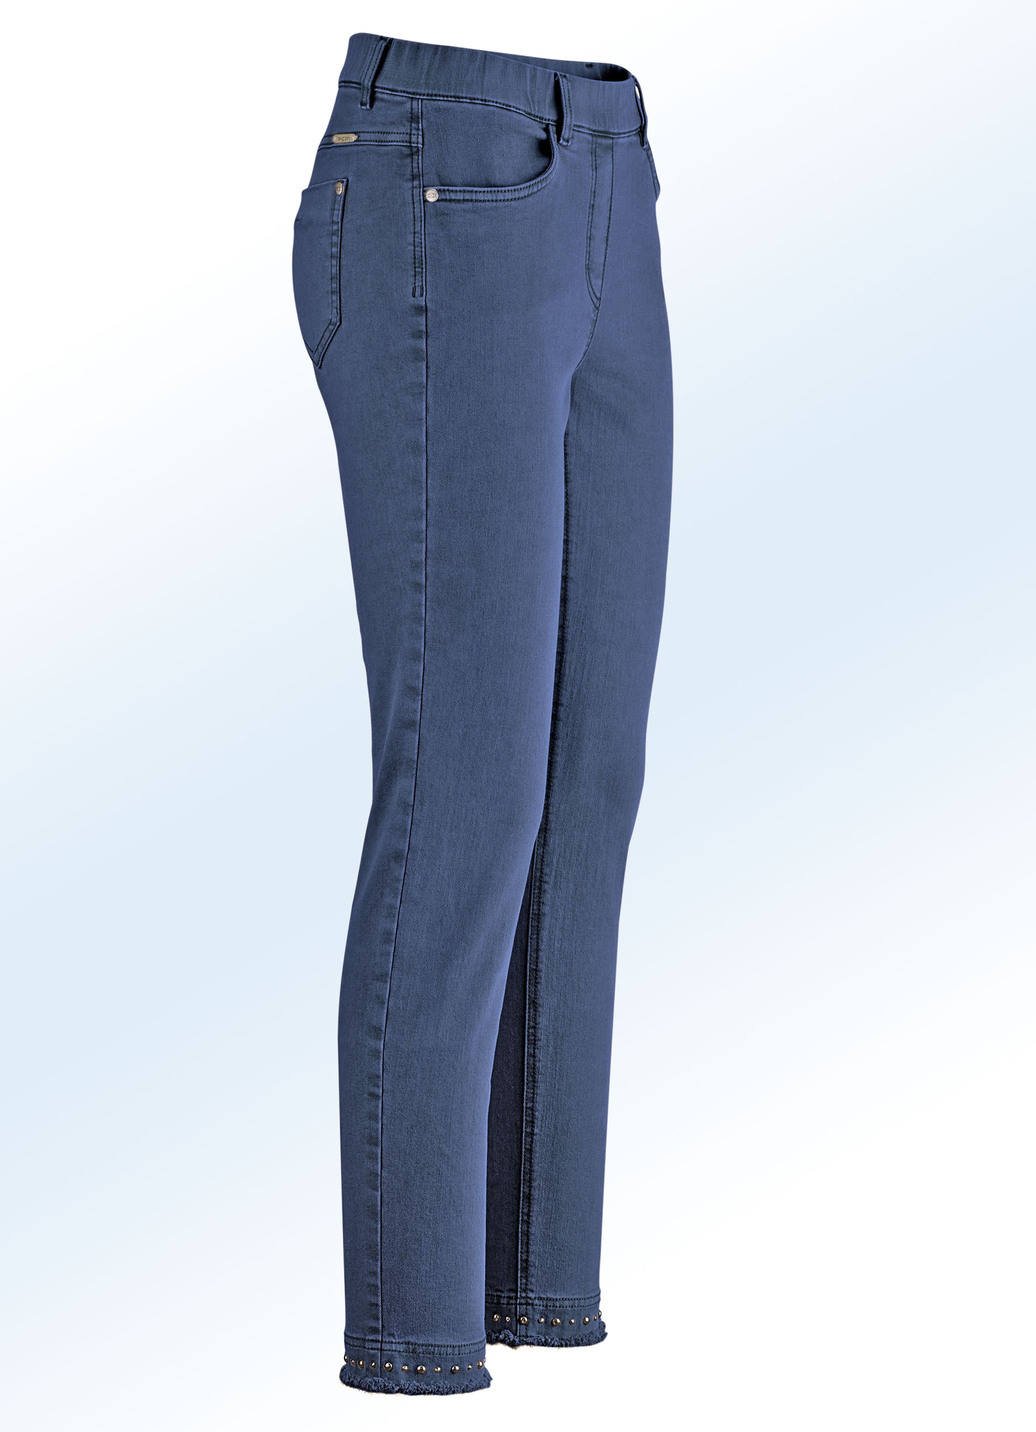 Magic-Jeans mit toller Nietenzier sowie angesagtem Fransensaum, Jeansblau, Größe 19 von ASCARI